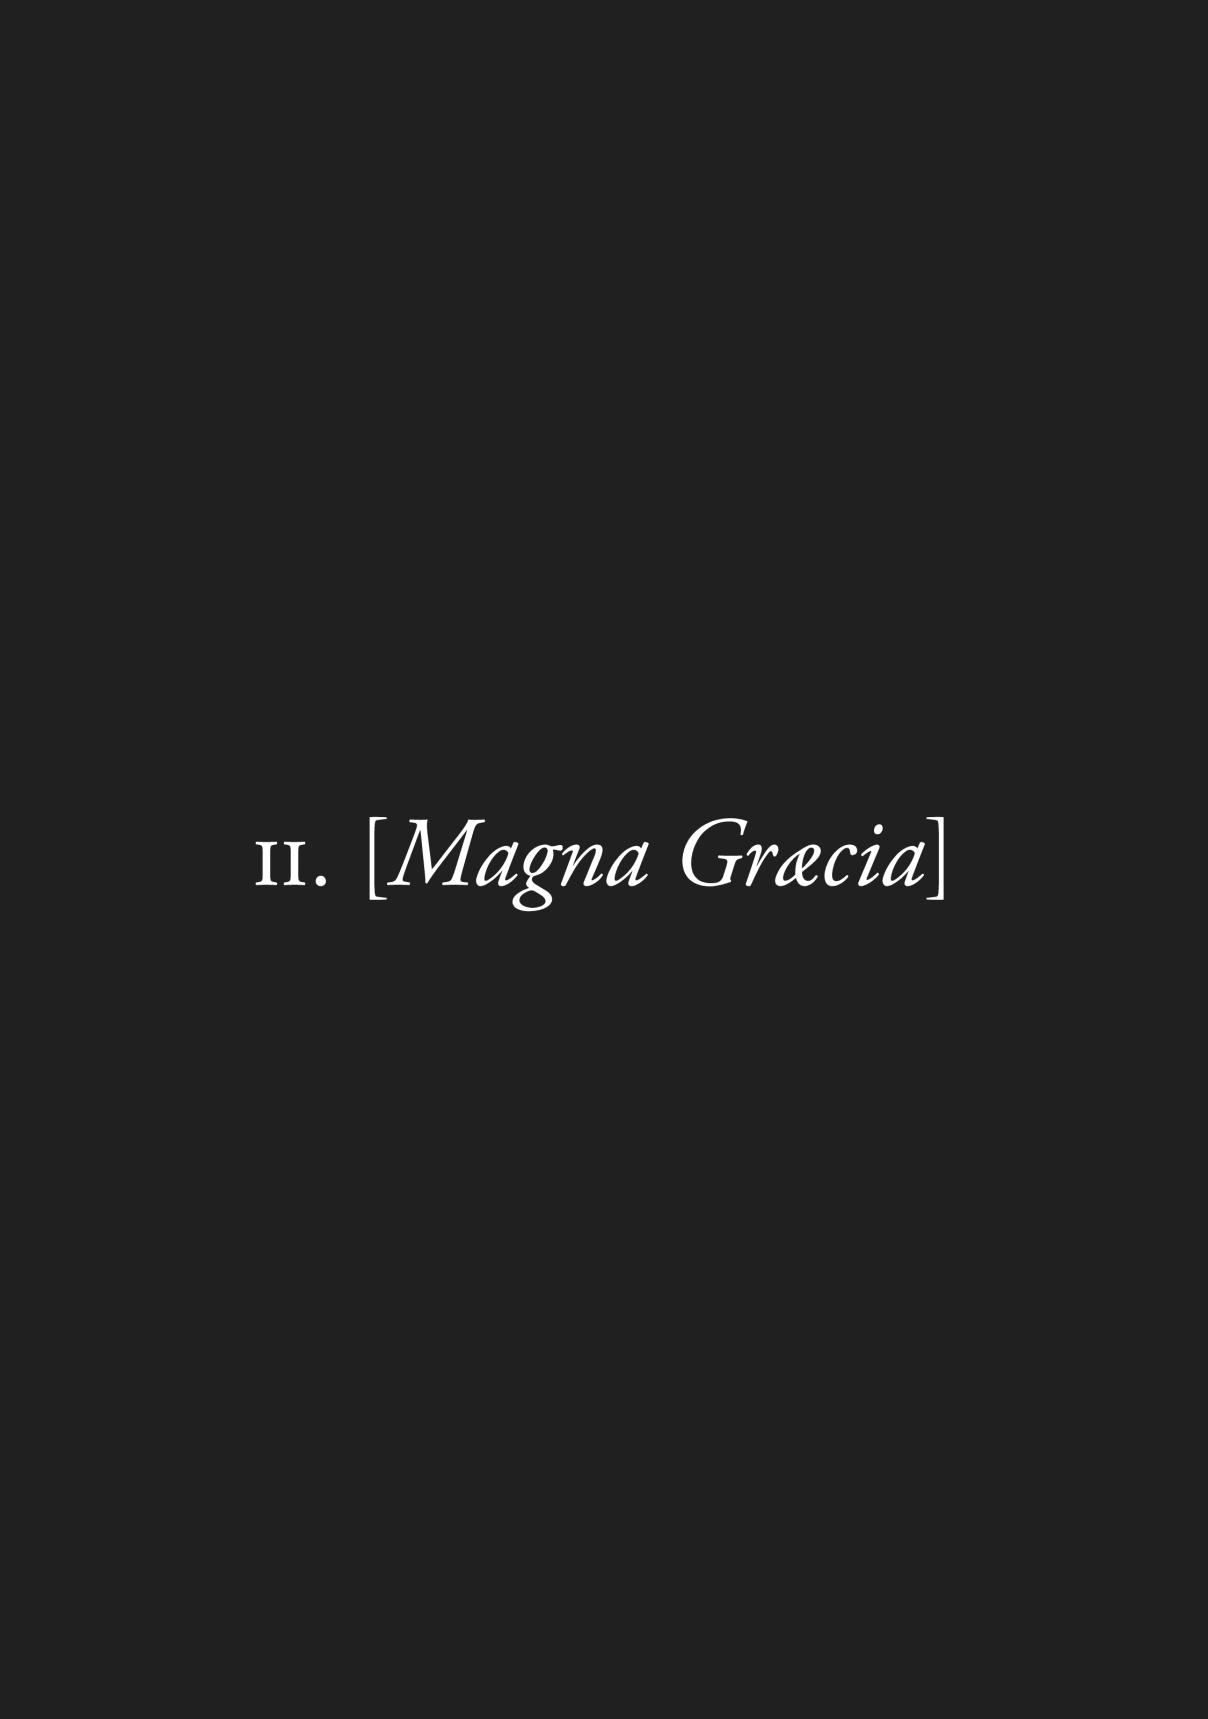 Plinivs Vol. 1 Ch. 2 Magna Græcia